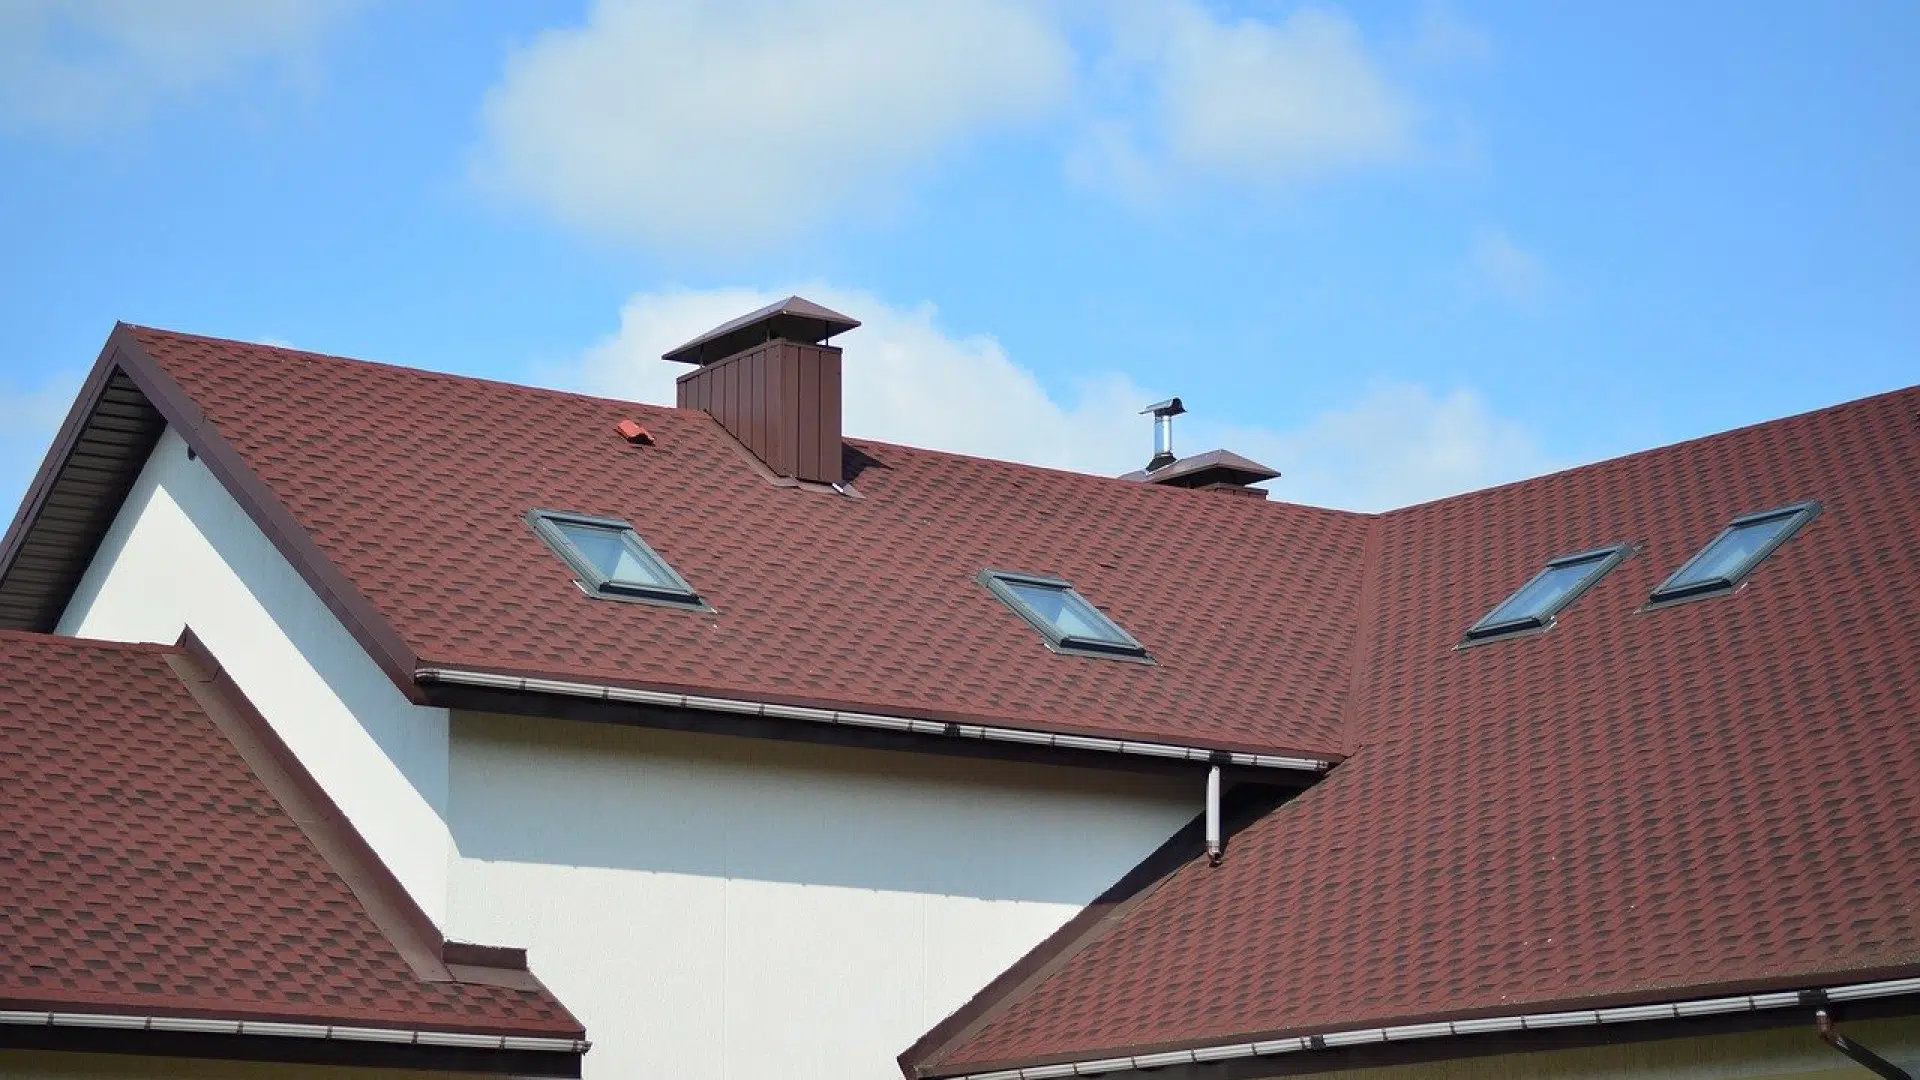 Comment calcule t-on la pente d'un toit ?